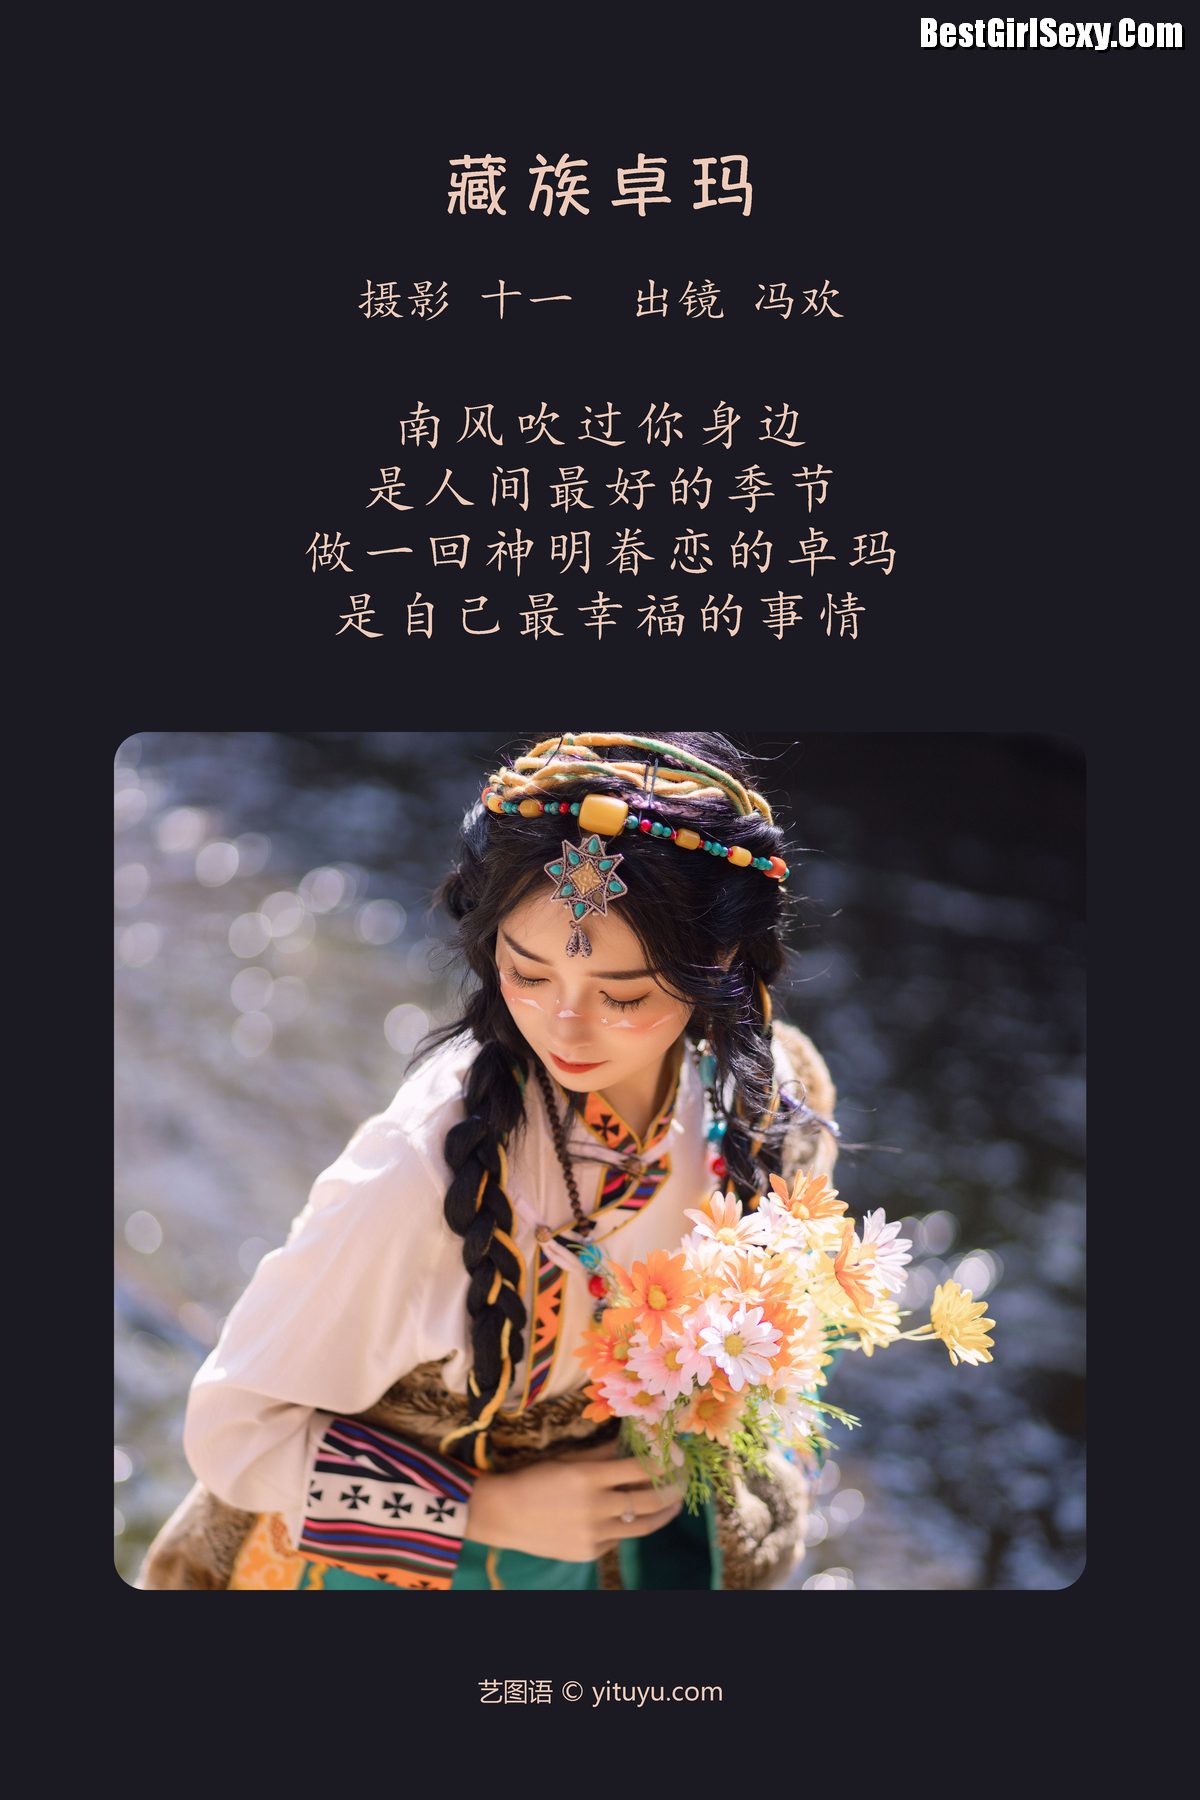 YiTuYu艺图语 Vol 3959 Feng Huan 0002 9570456086.jpg